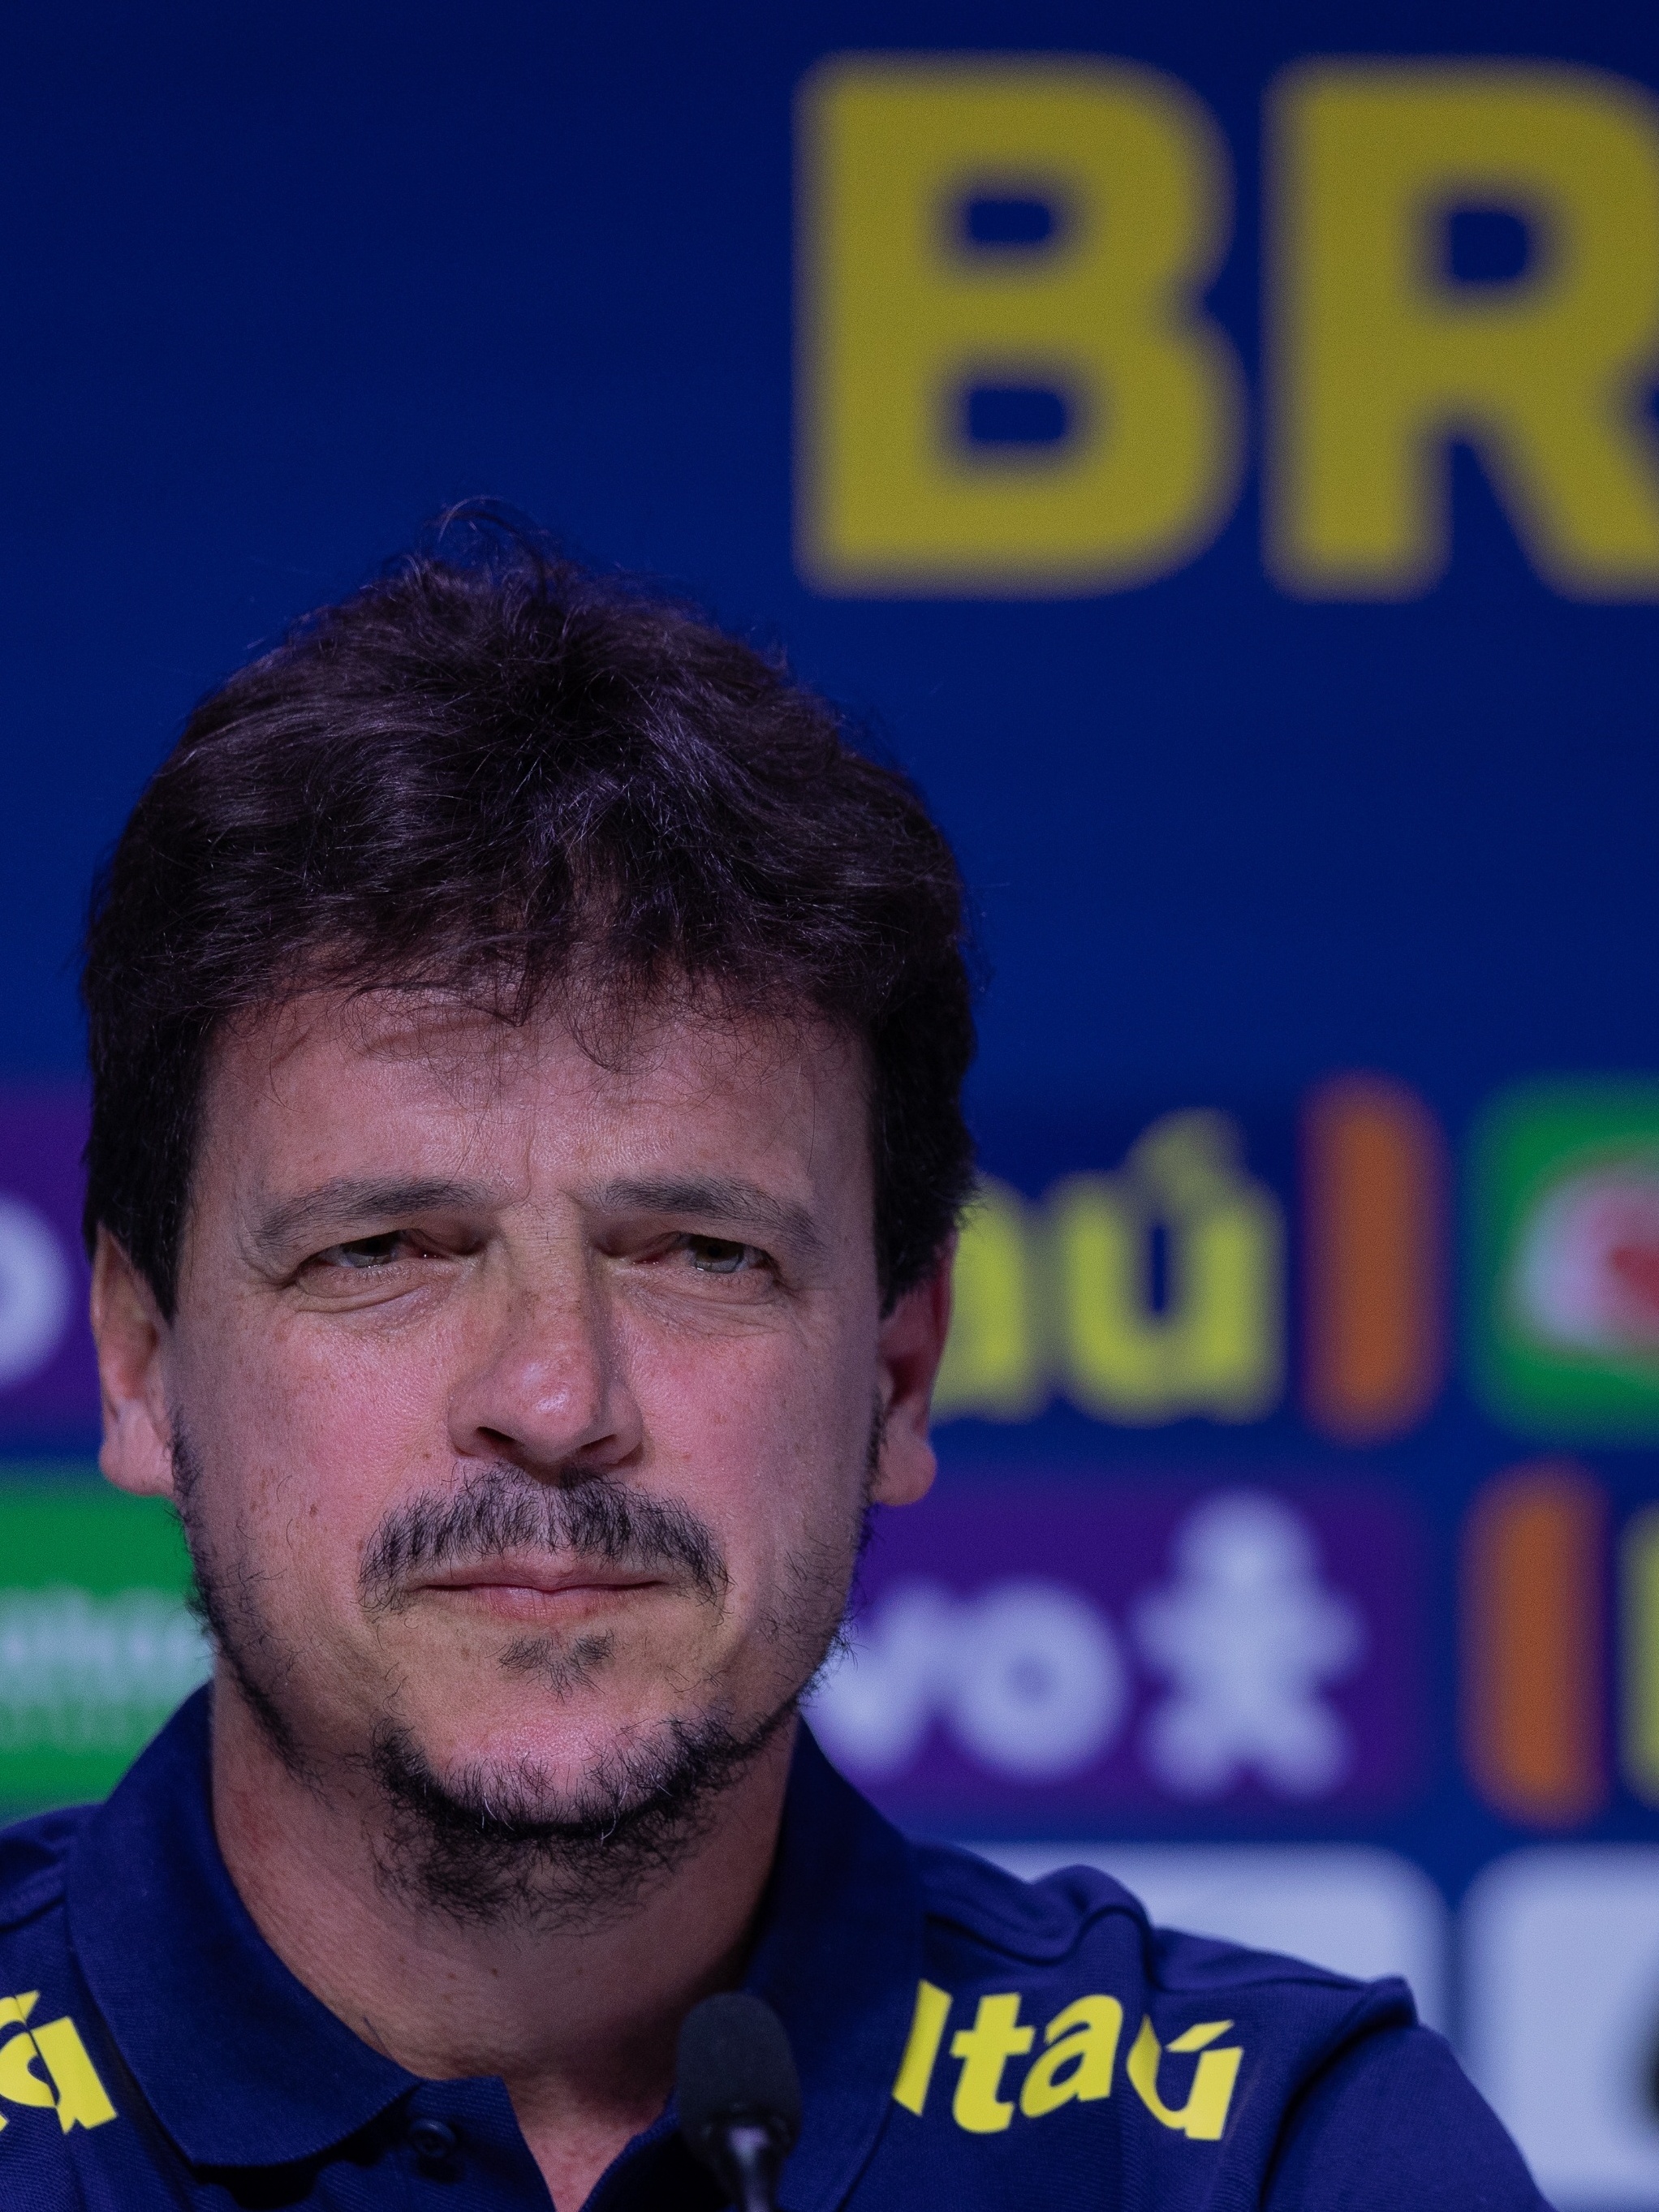 Brasil fará estreia em casa contra a Bolívia, em setembro, pelas  Eliminatórias da Copa do Mundo de 2026 - Esportes DP